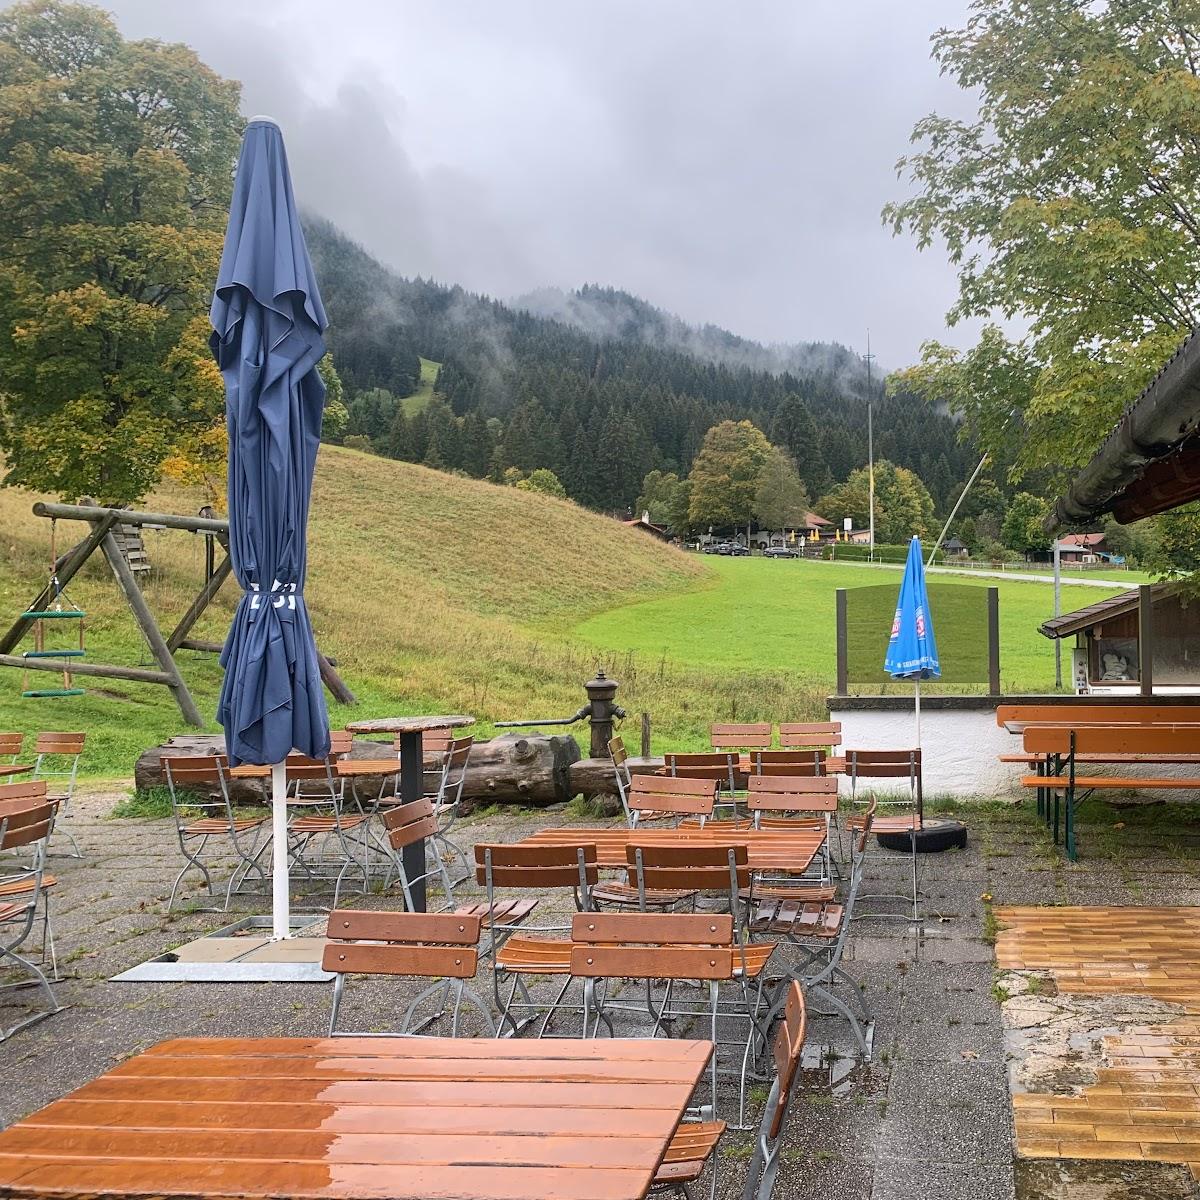 Restaurant "Steckenberg Alm und Skilifte" in Unterammergau